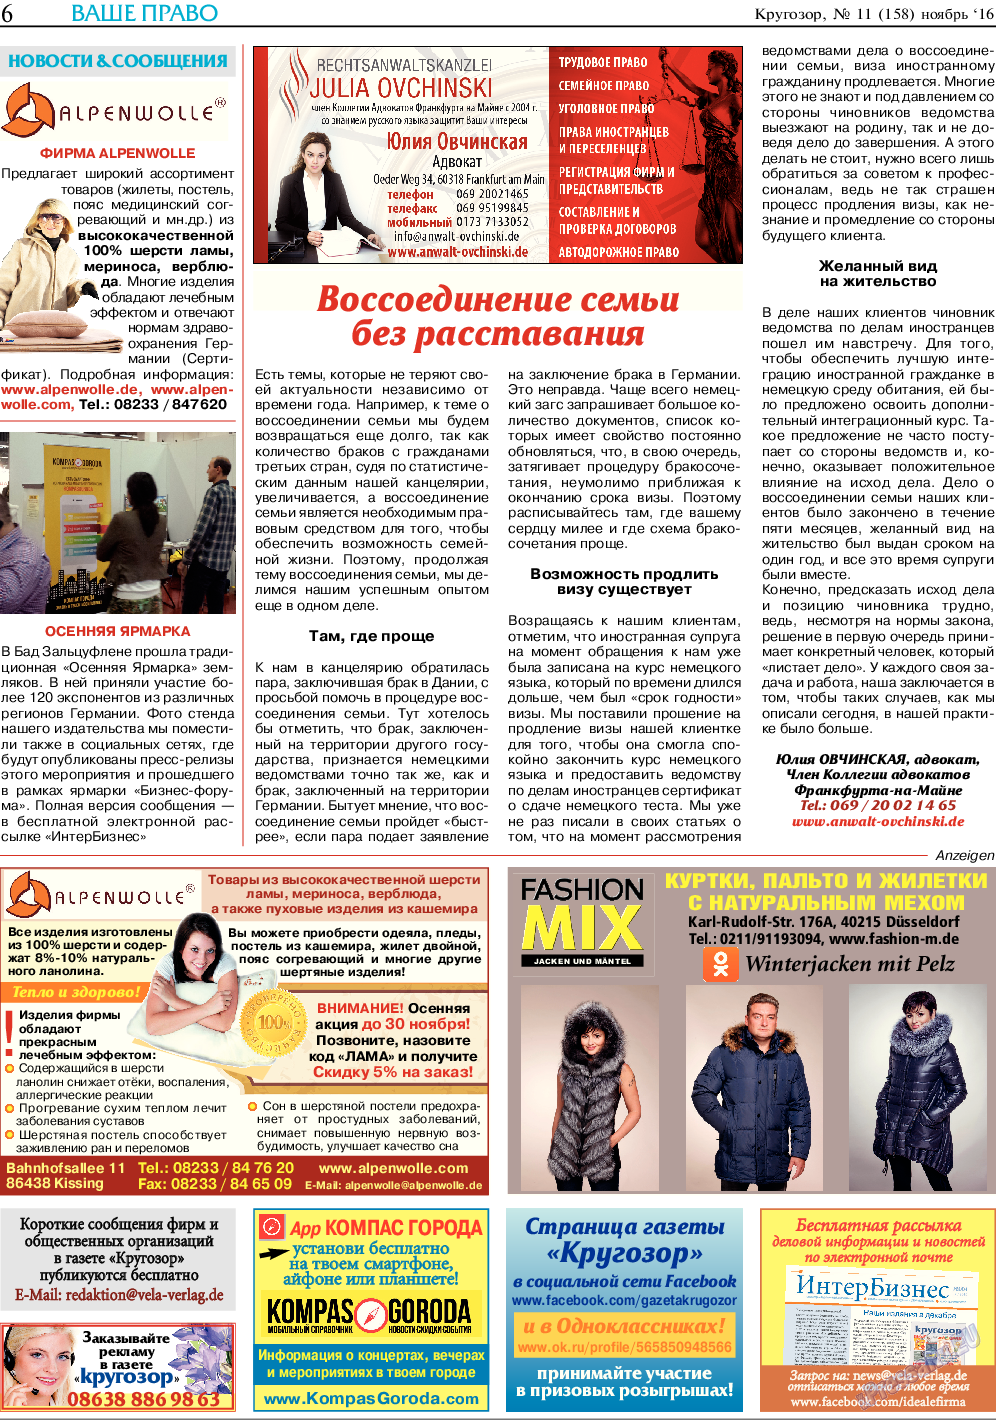 Кругозор (газета). 2016 год, номер 11, стр. 6